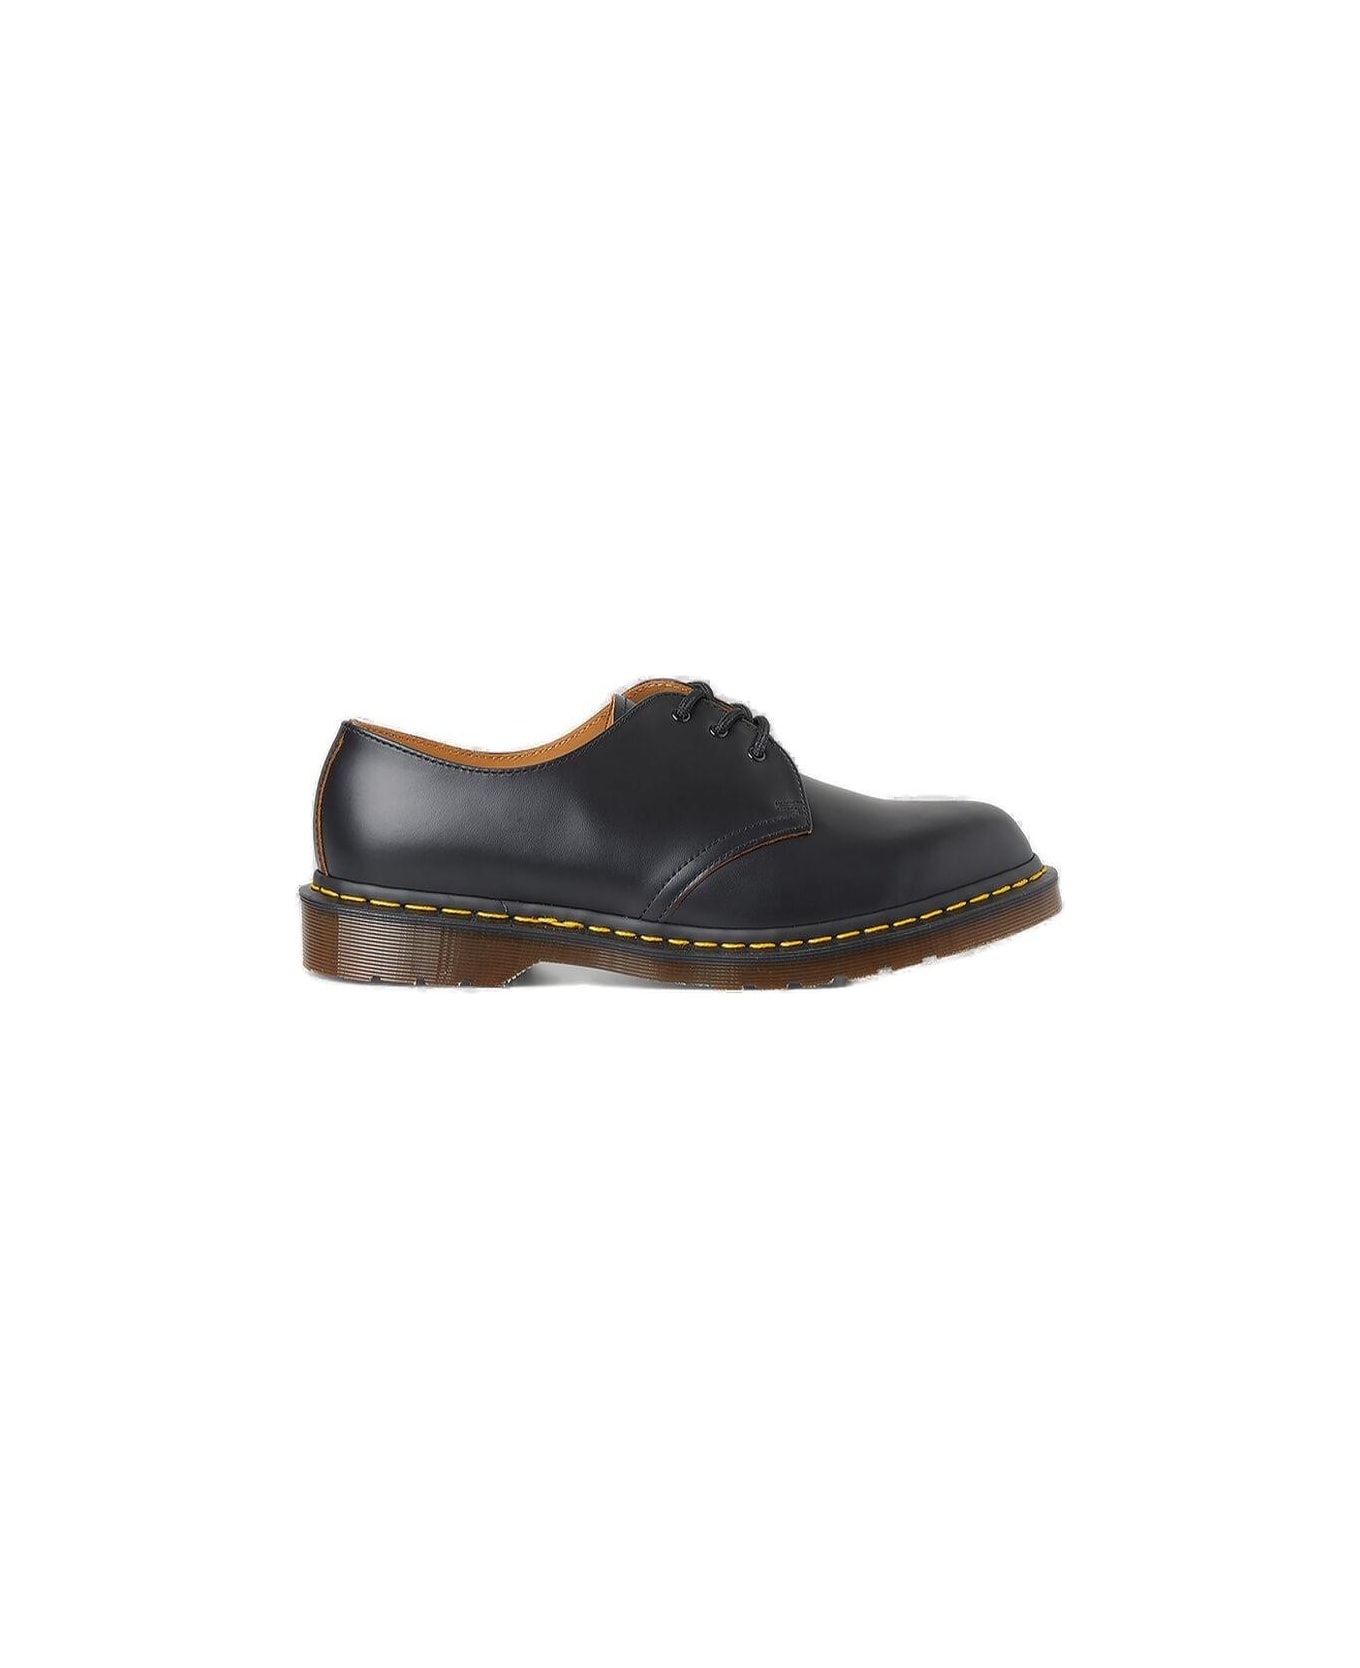 Dr. Martens Vintage 1461 Lace-up Shoes - BLACK